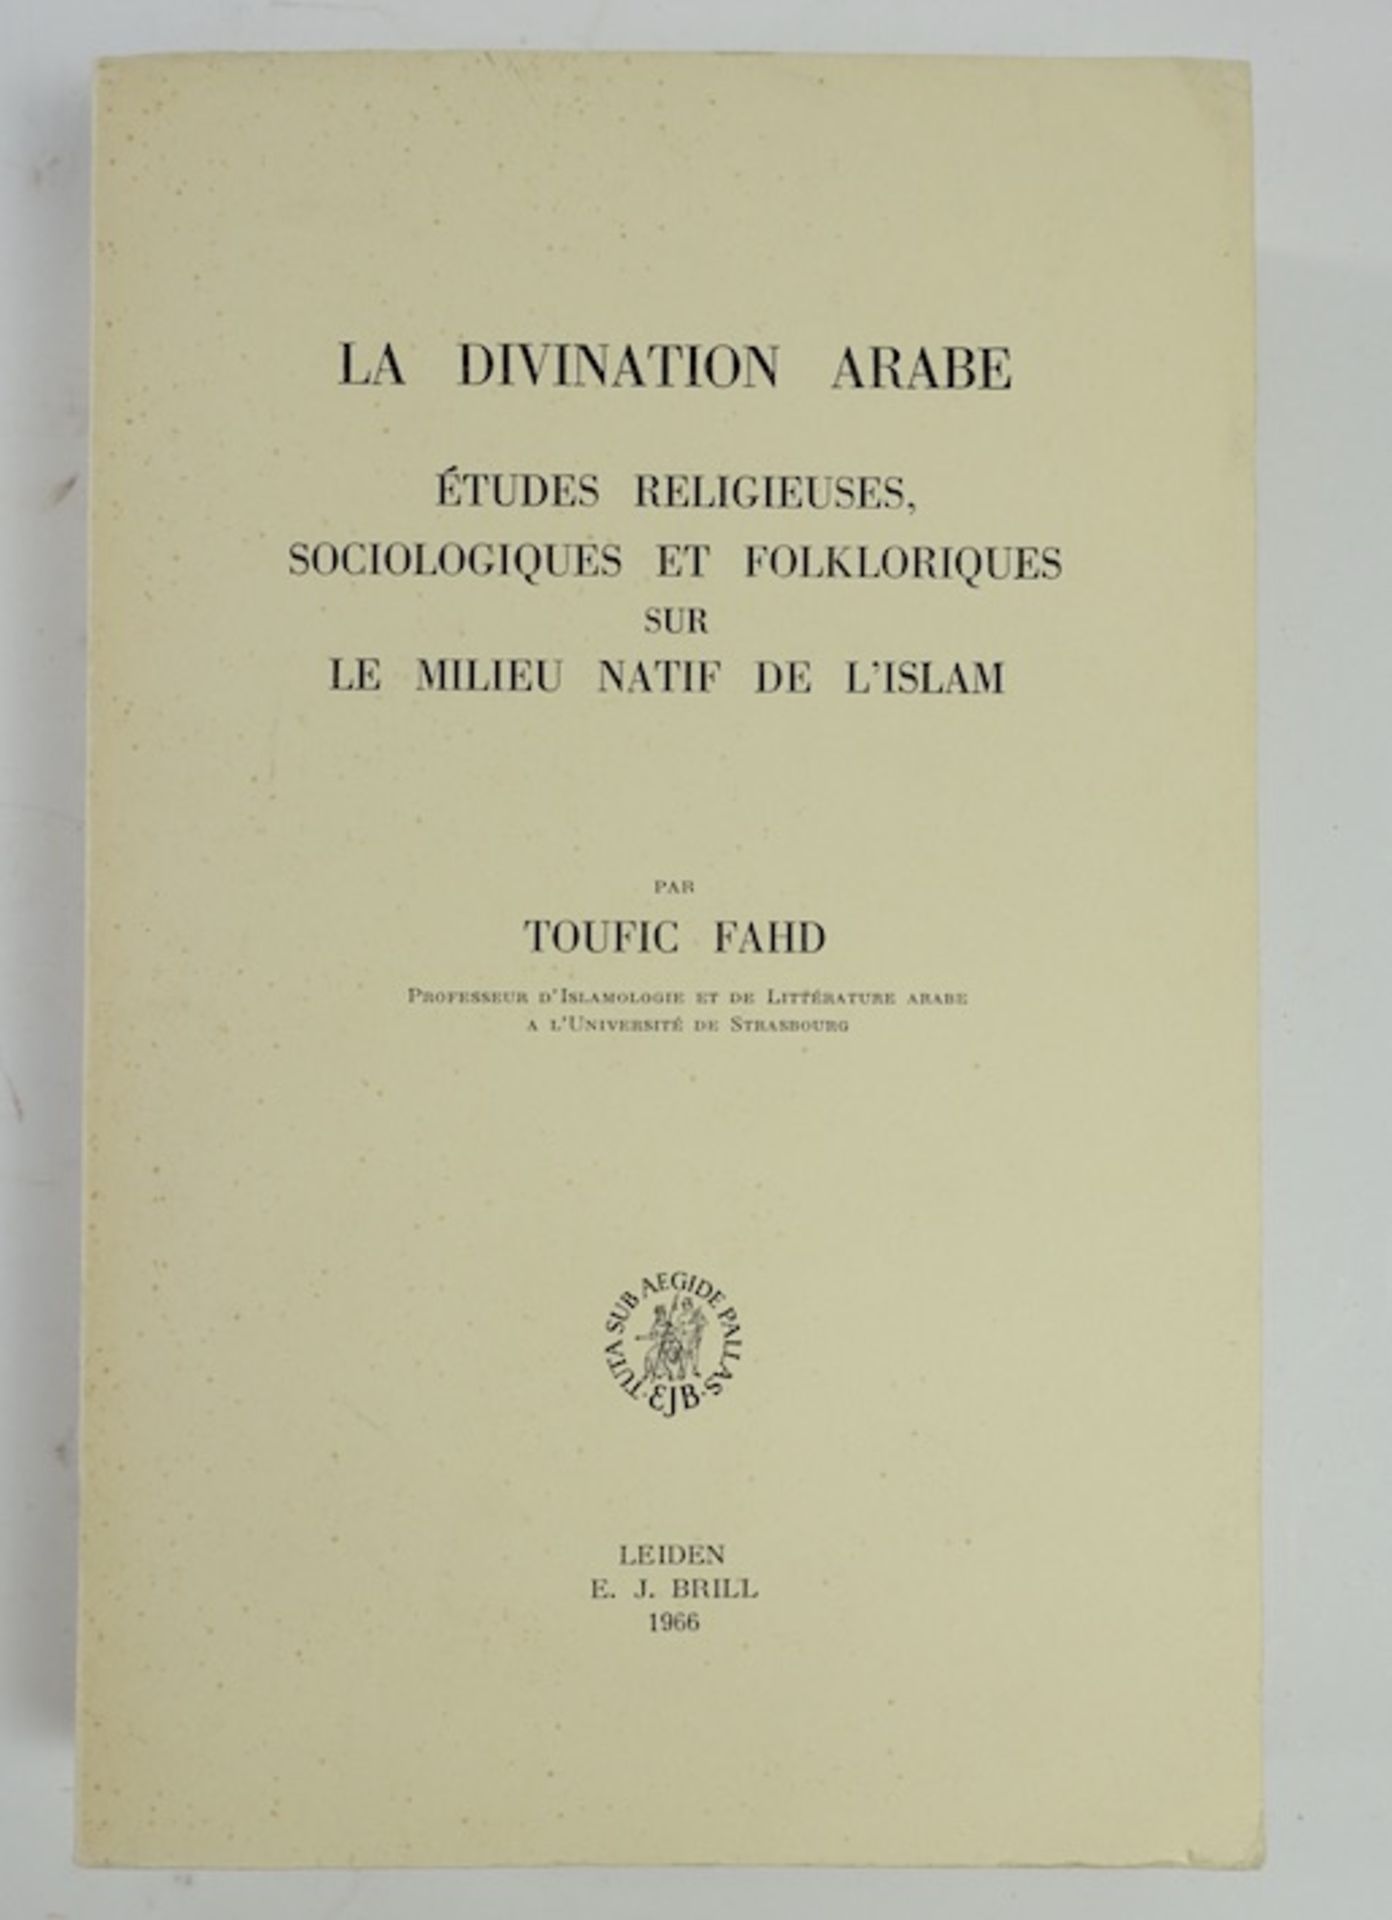 FAHD, T. La divination arabe. Études religieuses, sociologiques et folkloriques sur le milieu